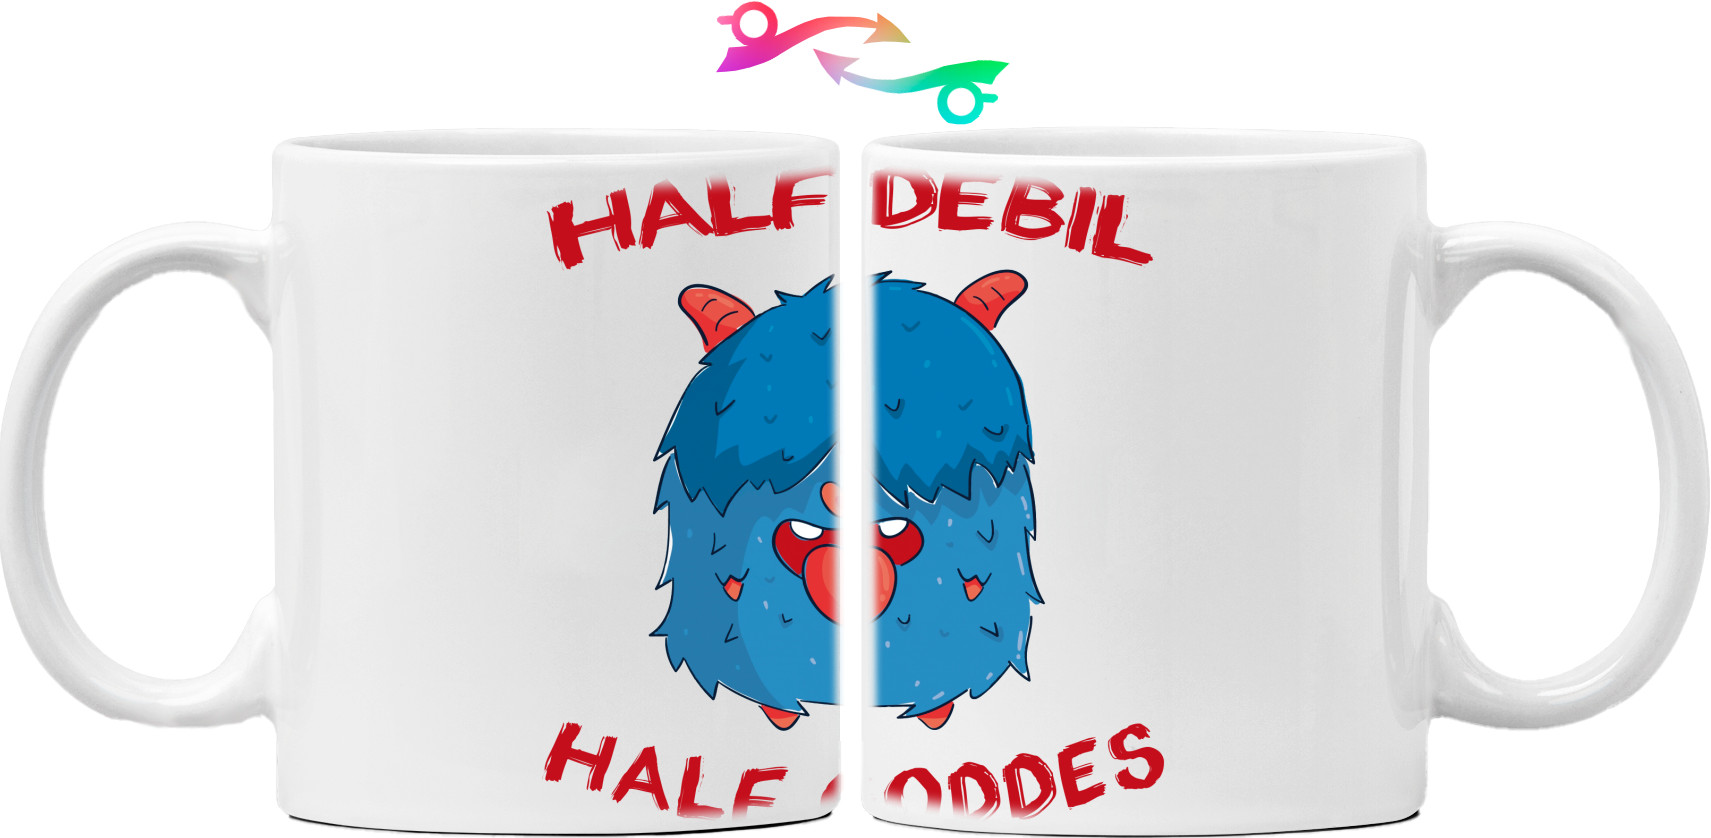 Half debil half goddes